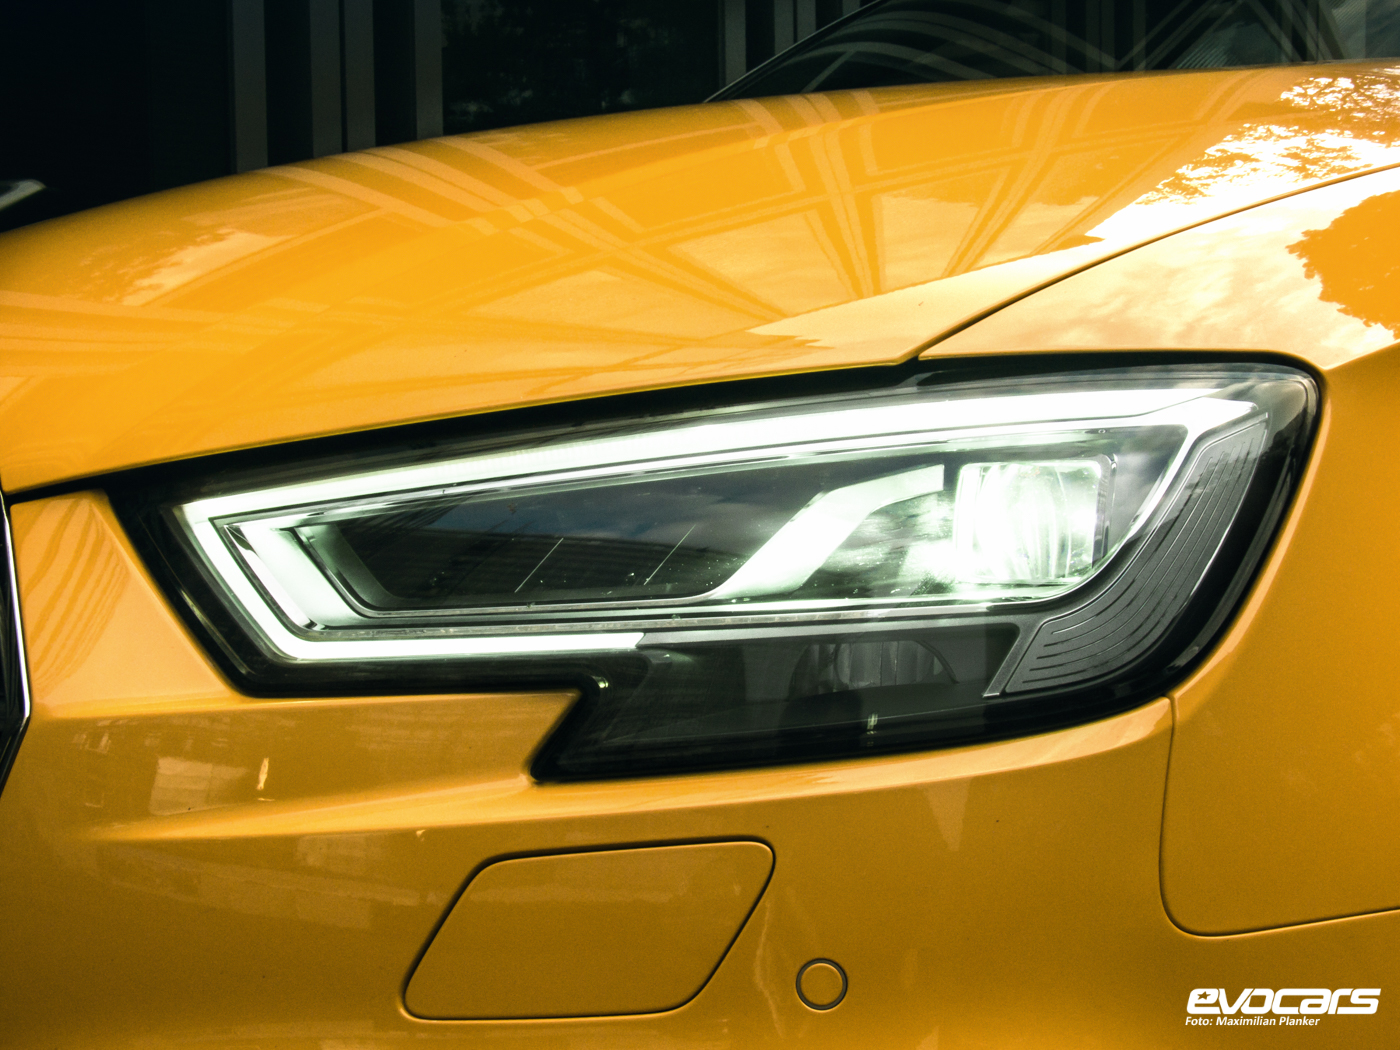 Gelbe Seite: Audi S3 Cabrio im Test